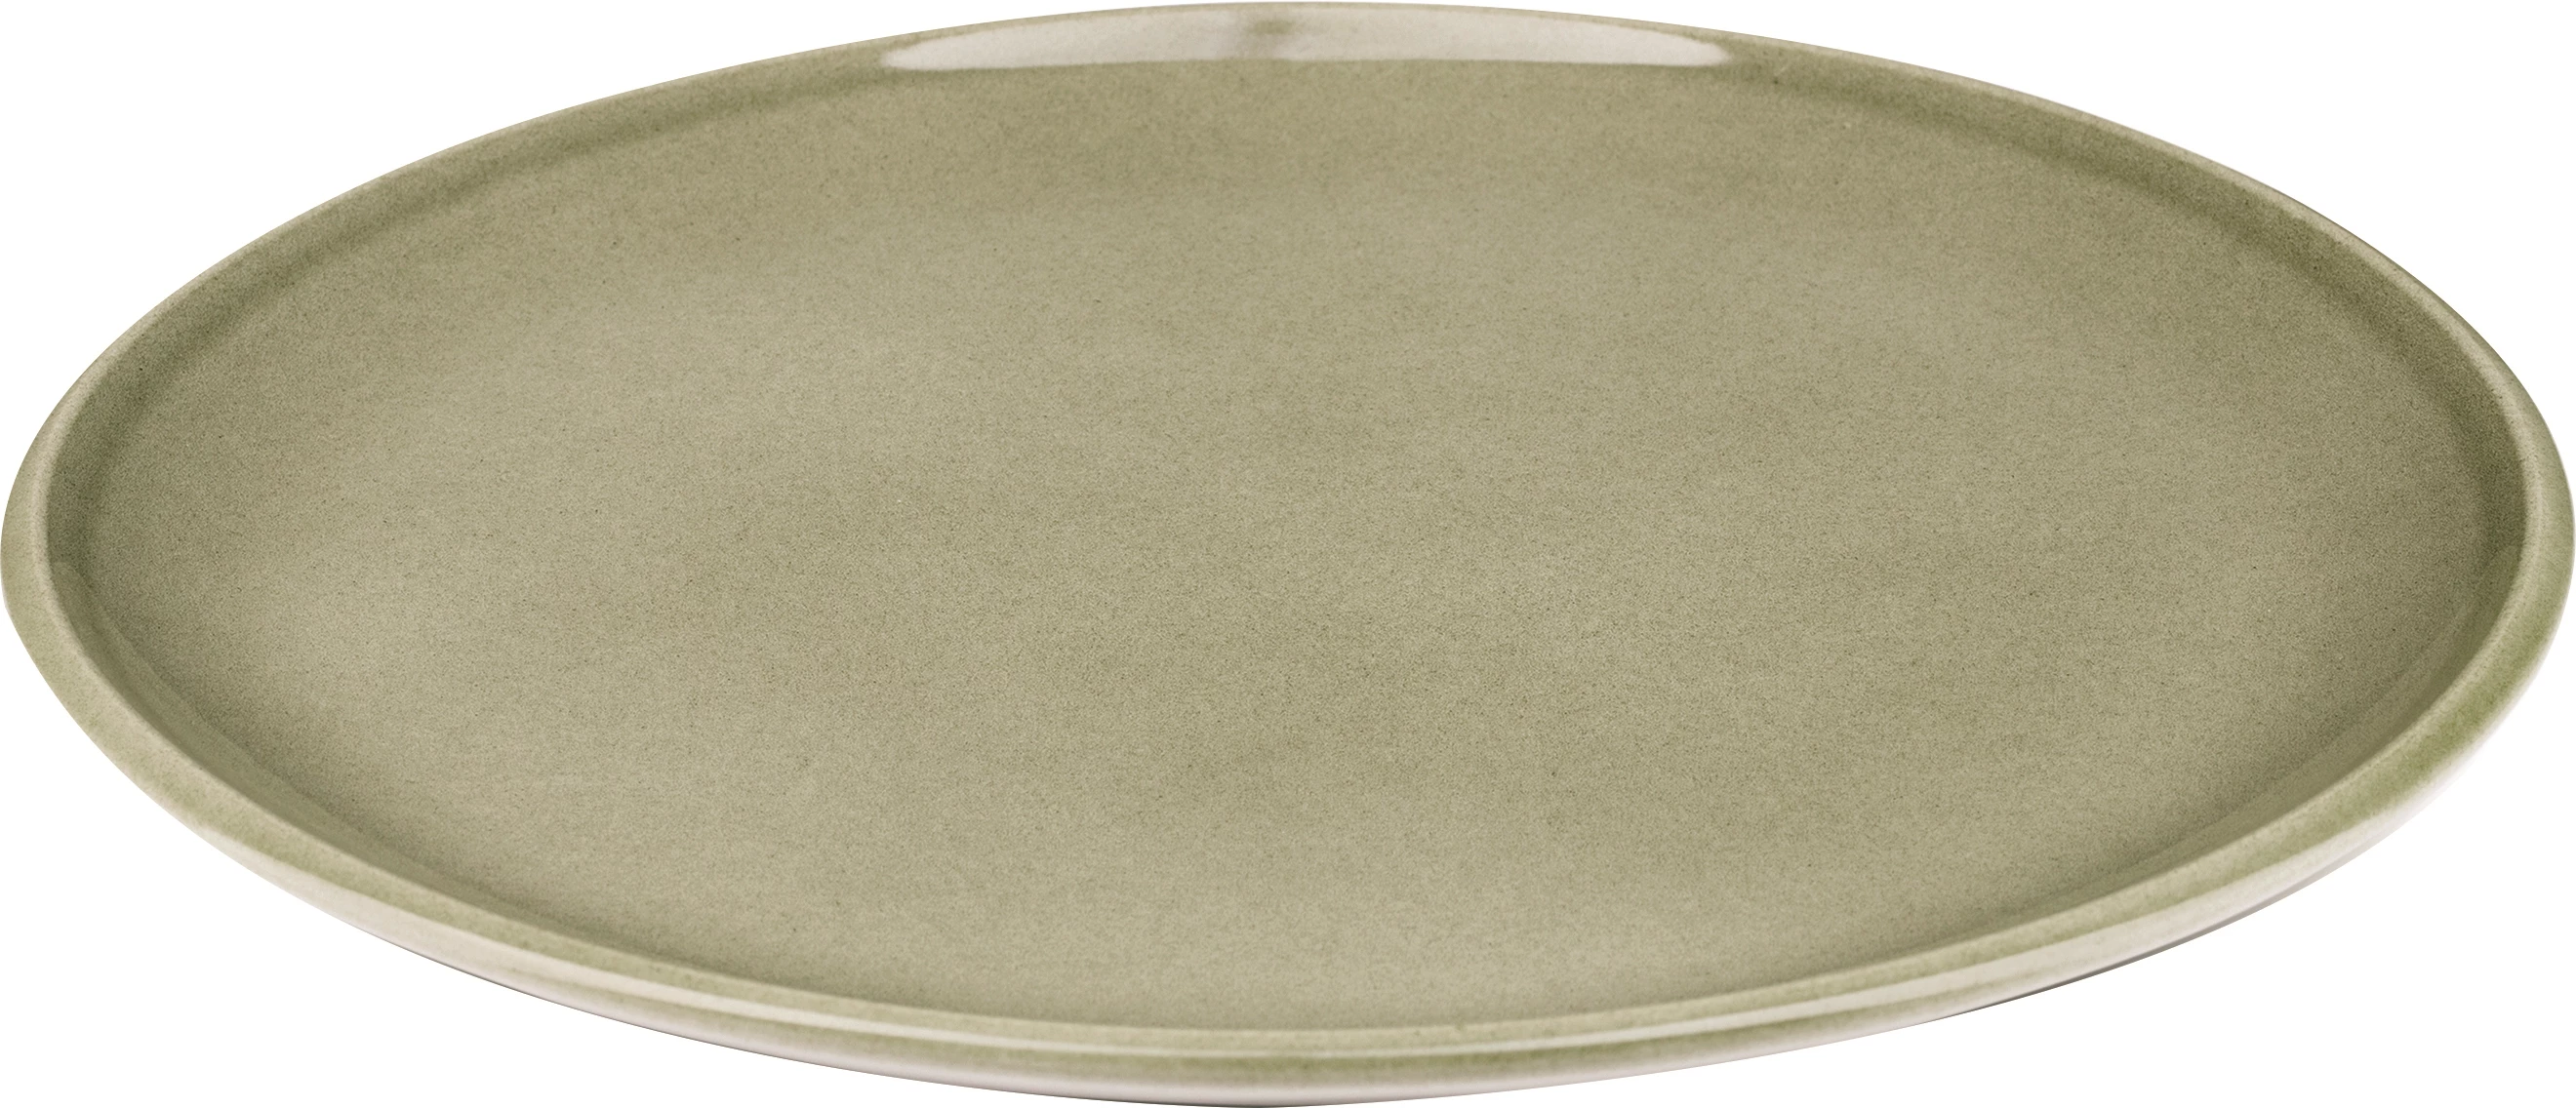 Figgjo Pax flad tallerken, oliven, ø26 cm